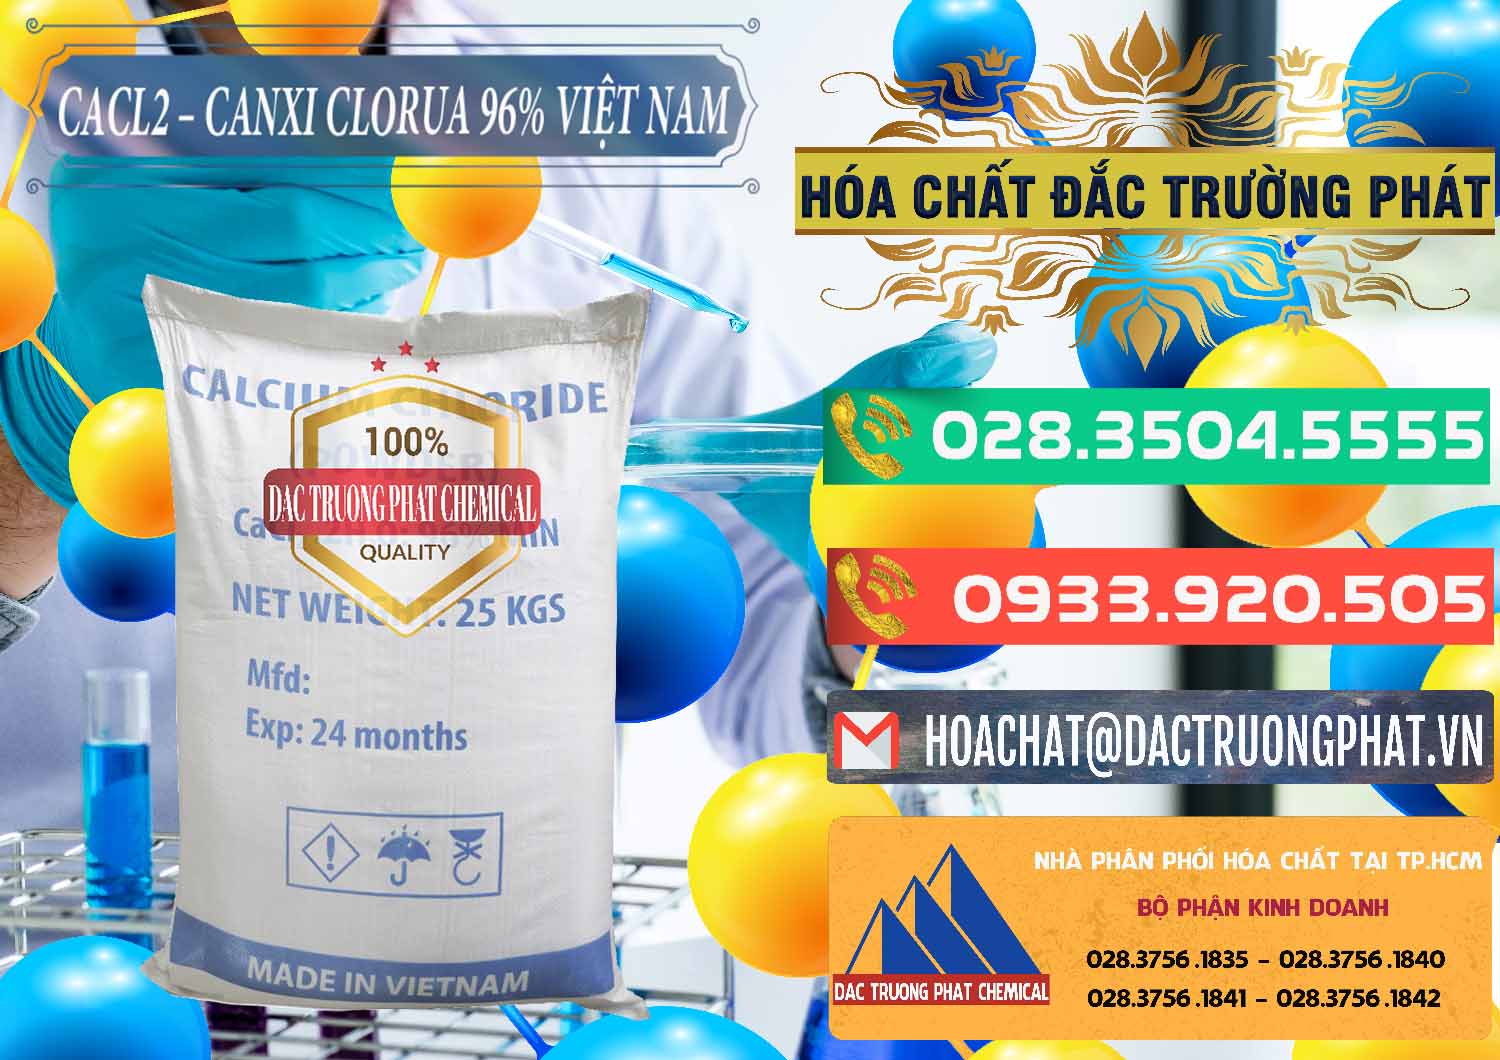 Nhà cung cấp - phân phối CaCl2 – Canxi Clorua 96% Việt Nam - 0236 - Chuyên cung ứng & phân phối hóa chất tại TP.HCM - congtyhoachat.com.vn